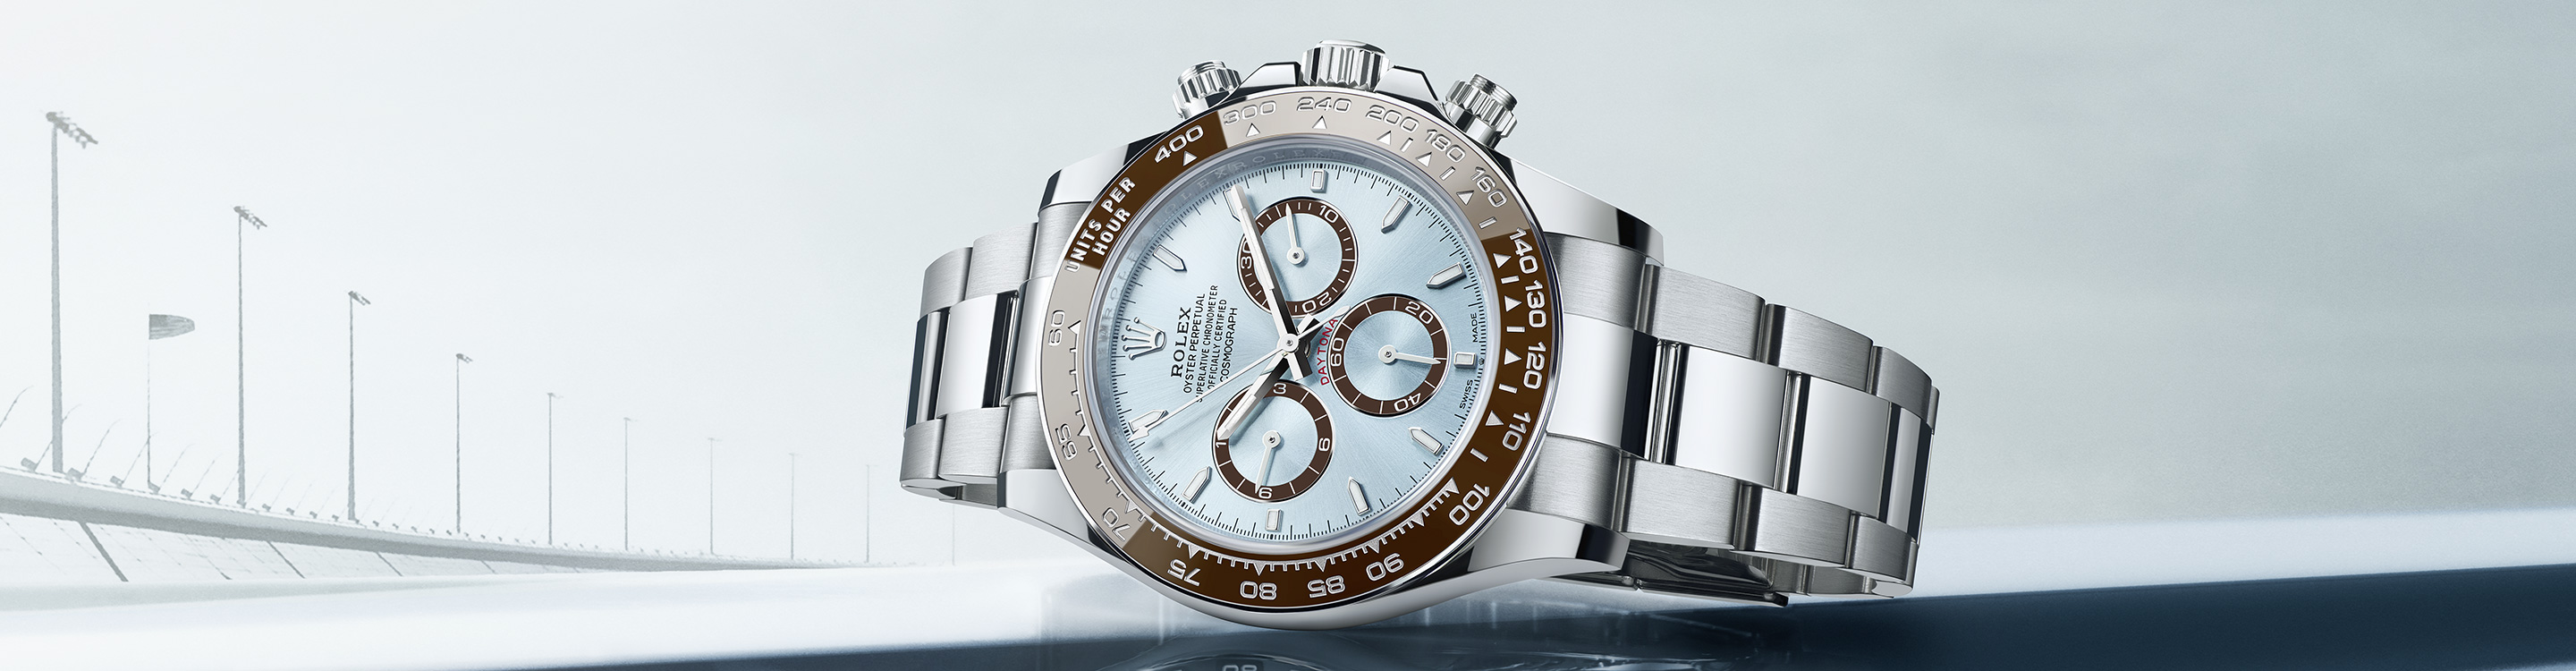 Rolex Cosmograph Daytona watch dial in Relojería Alemana